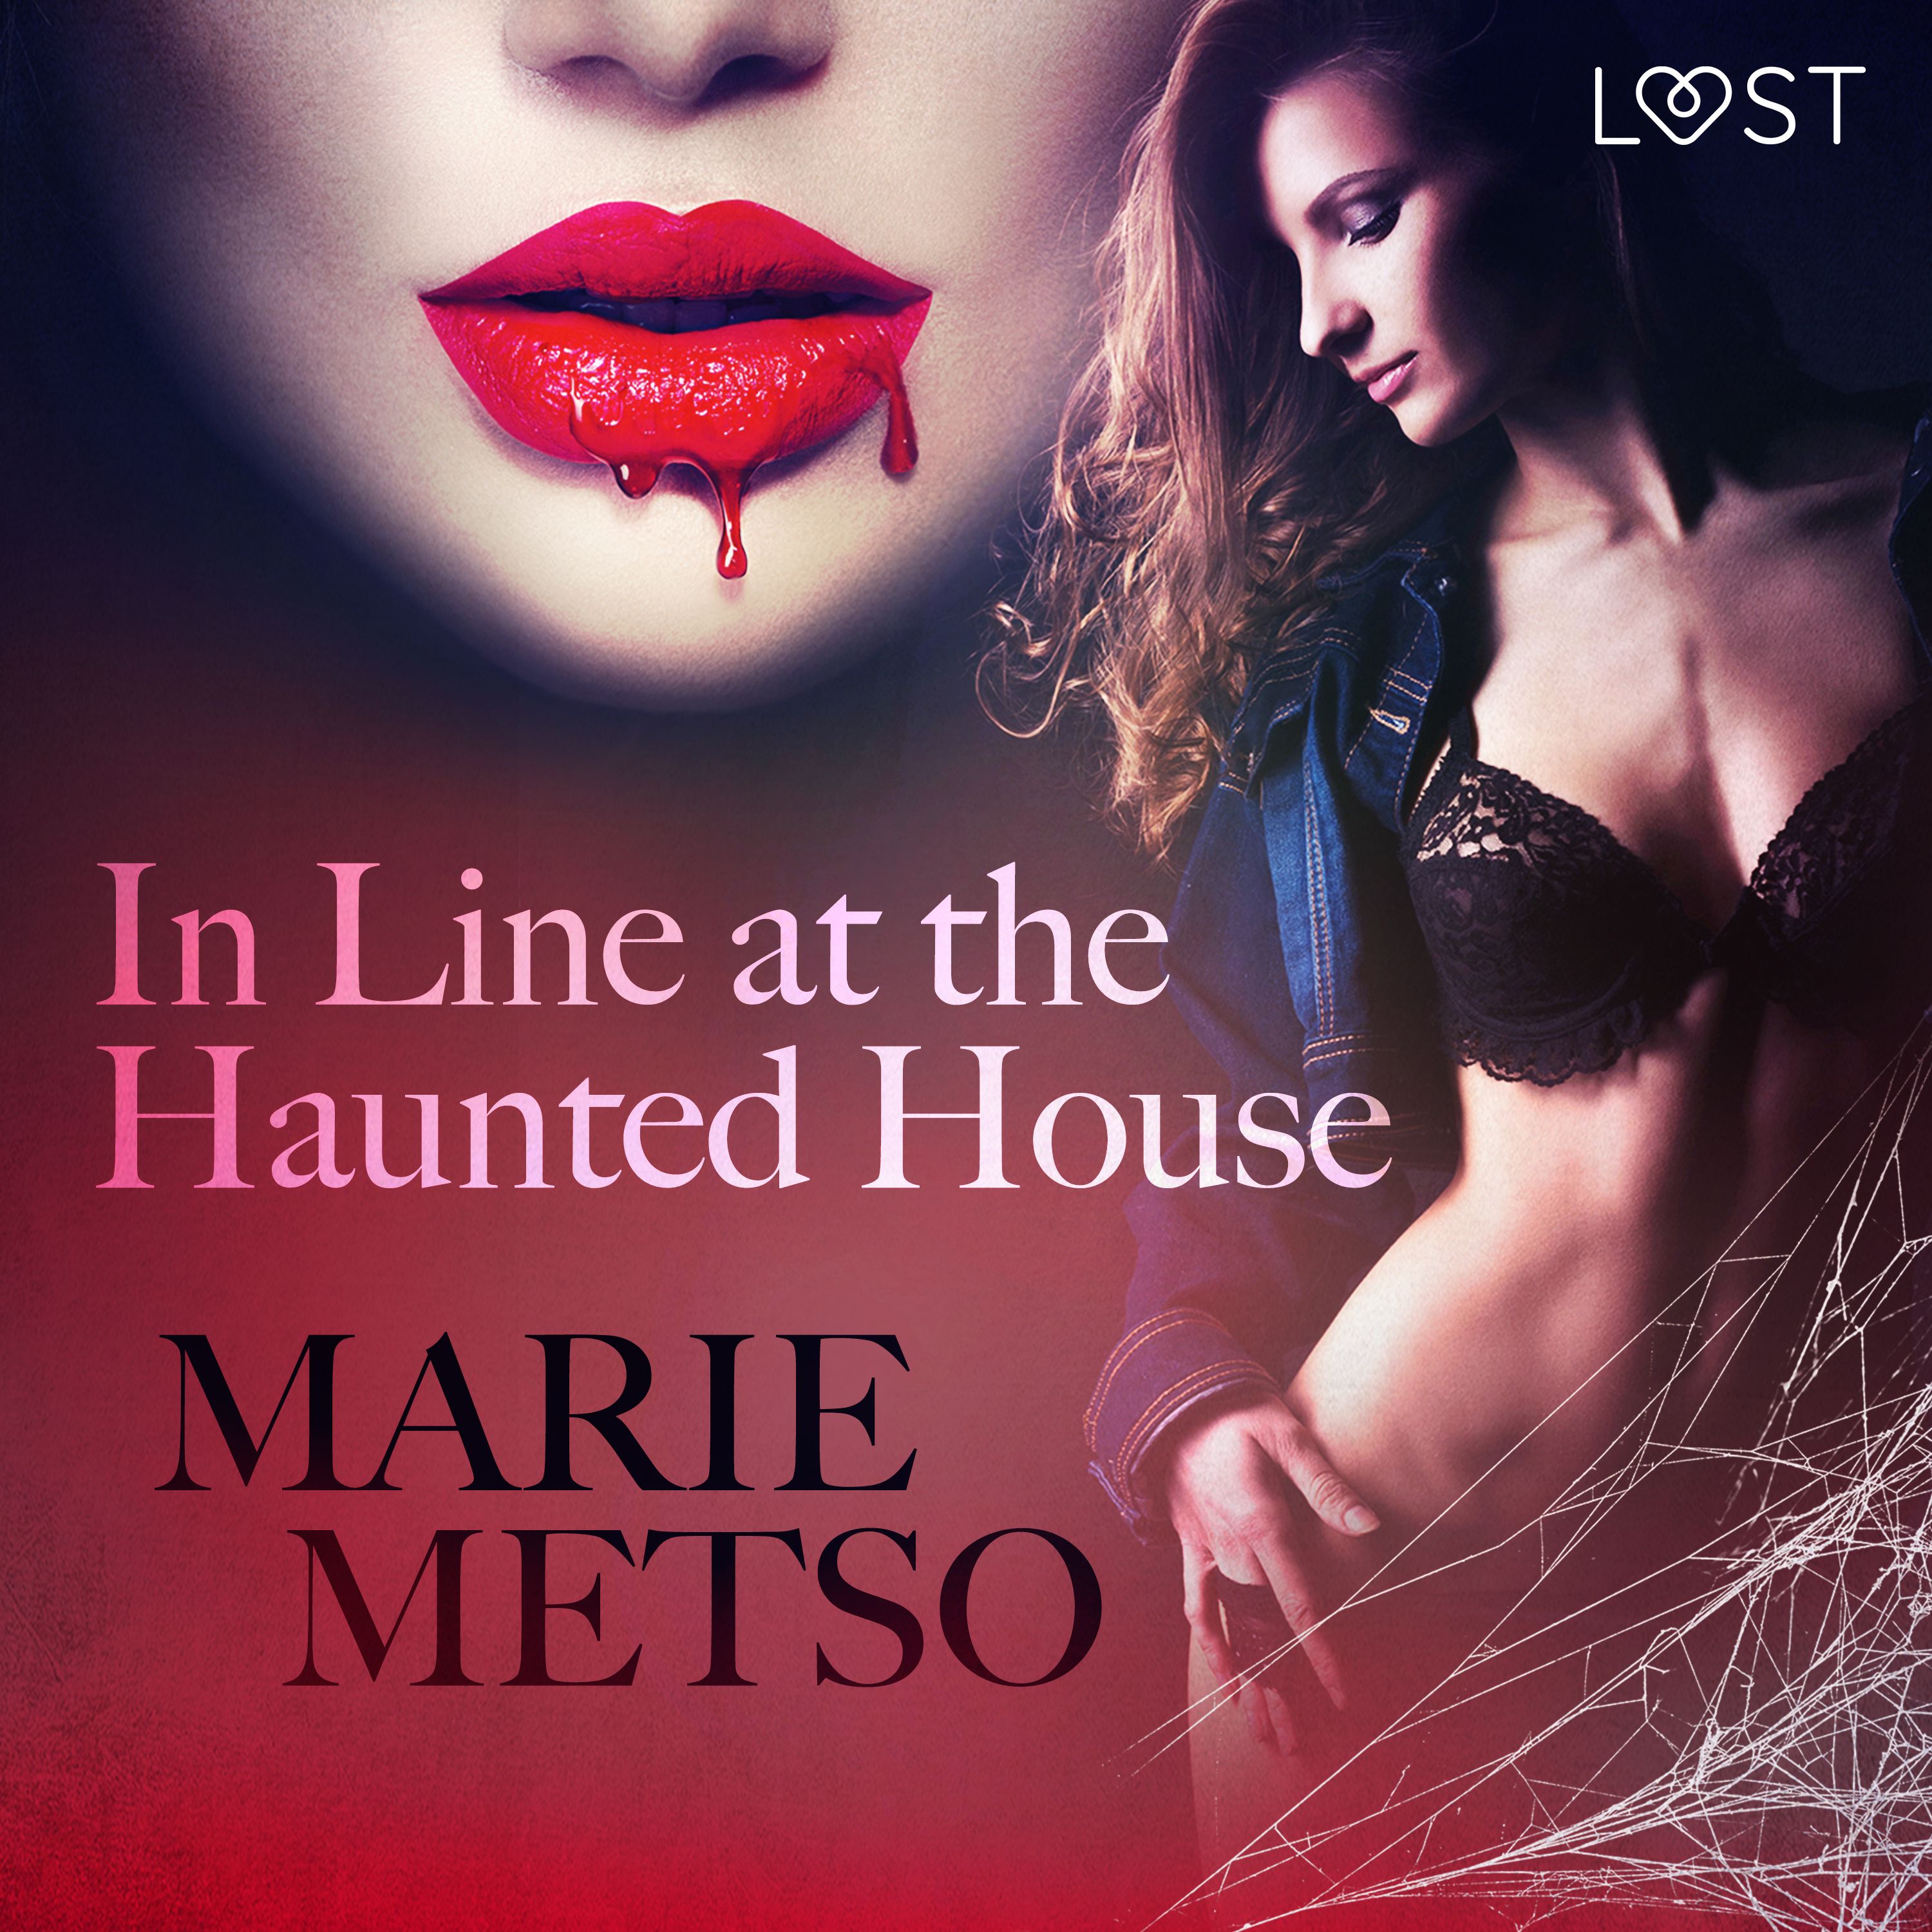 In Line at the Haunted House - Erotic Short Story, ljudbok av Cupido